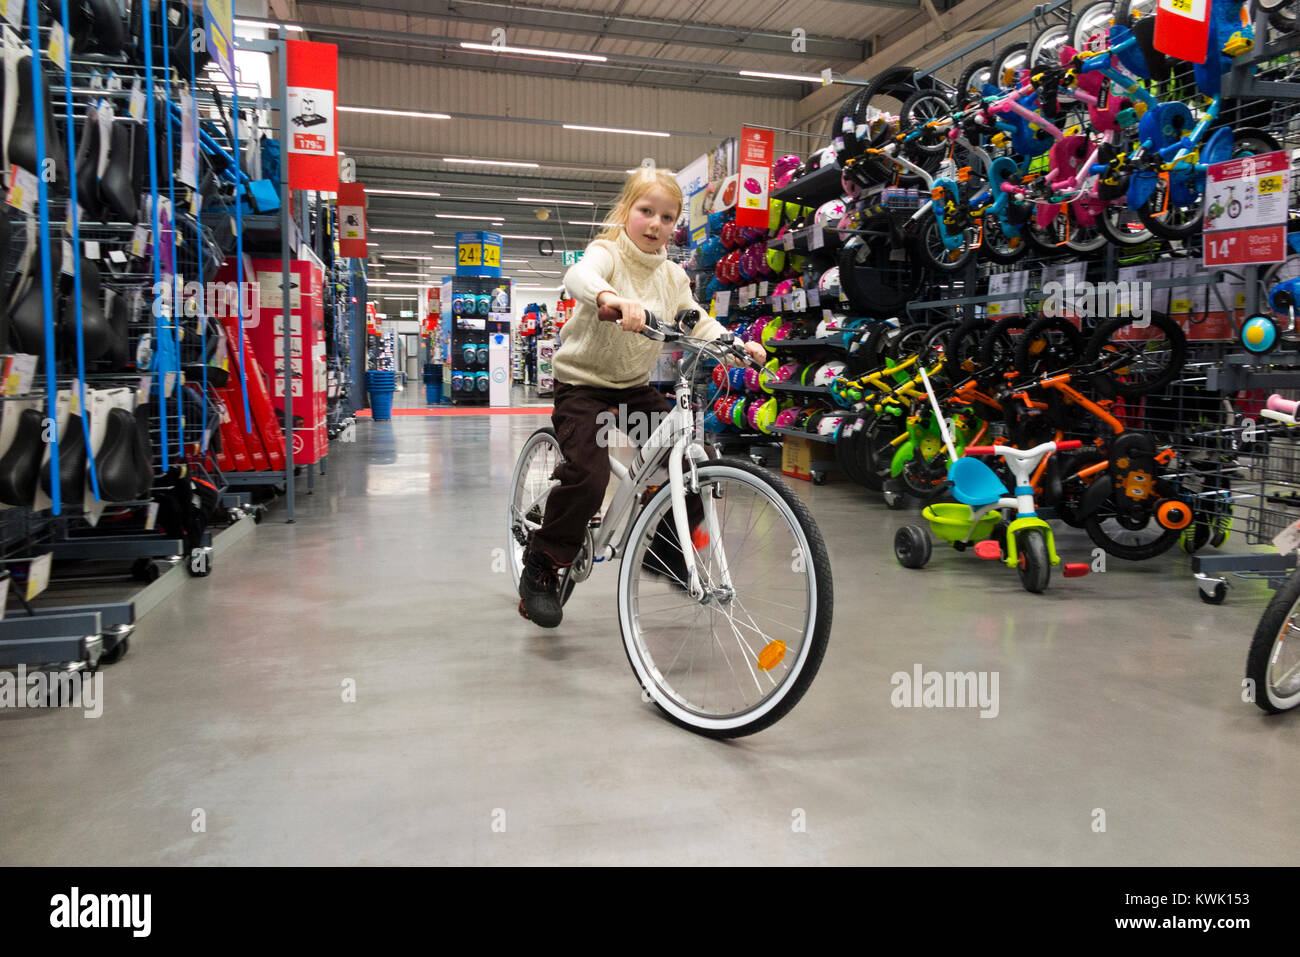 Jeune fille rider âgés de 7 ans rides / riders prendre des vélos / Nouveau / location de cycles pour un cycle de test à un bike shop avant d'acheter, en vacances. (93) Banque D'Images